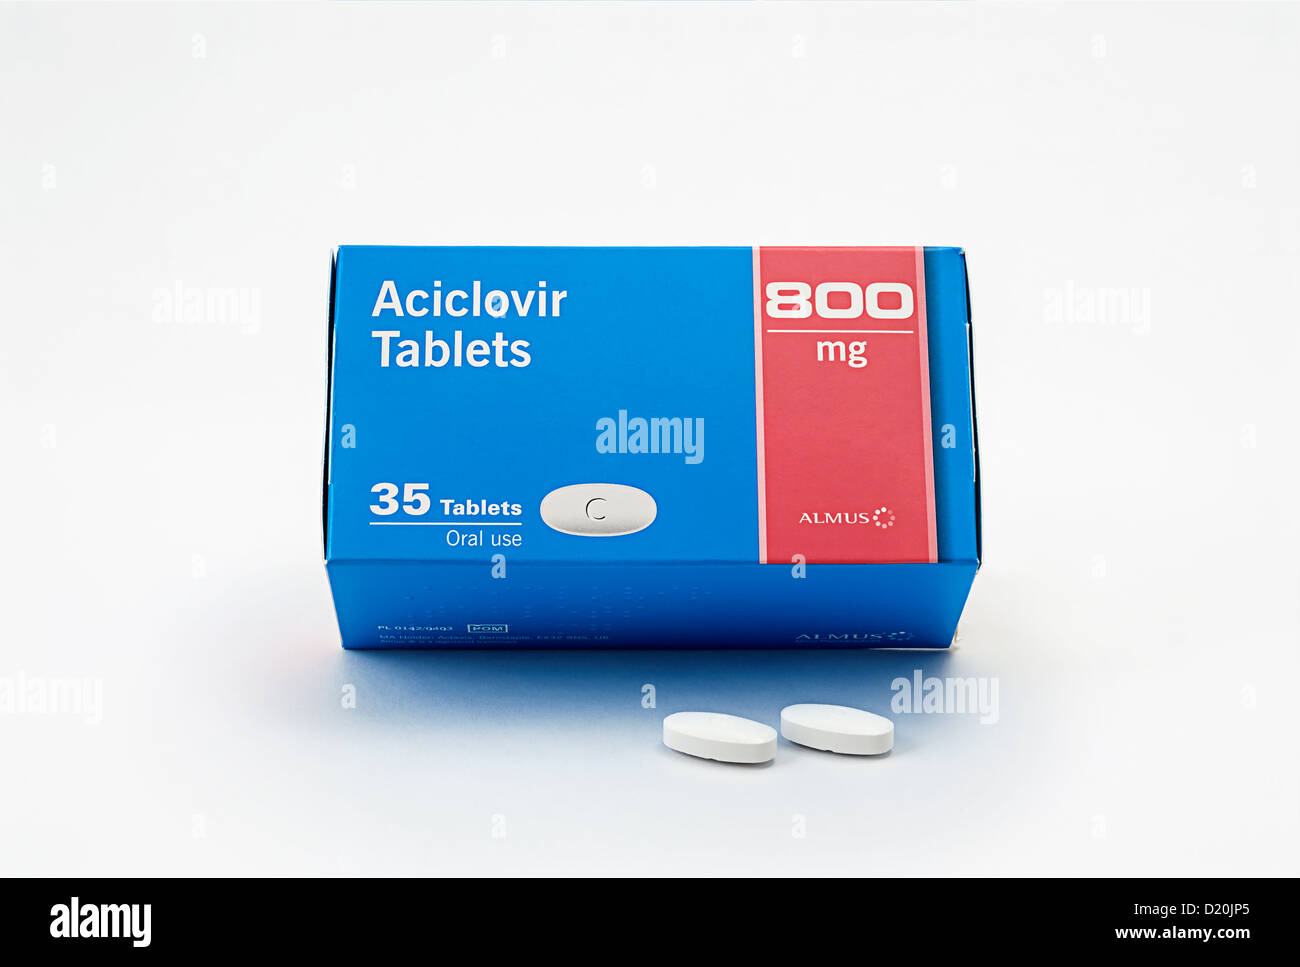 Una scatola di aciclovir, un farmaco antivirale usato per trattare le infezioni virali Foto Stock